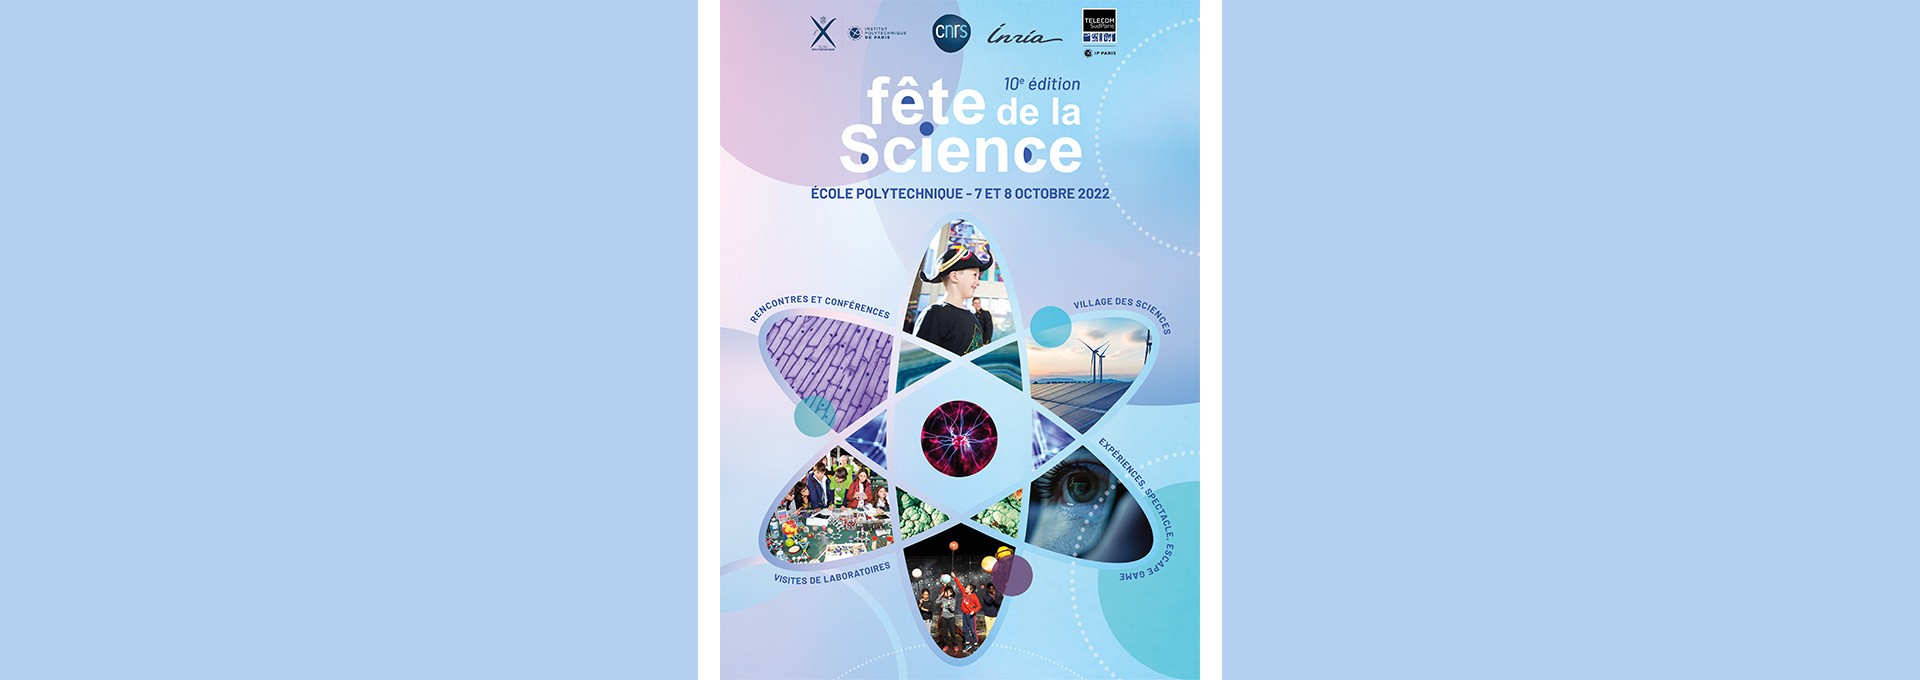 L’École polytechnique célèbre la 10ème édition de la Fête de la science !